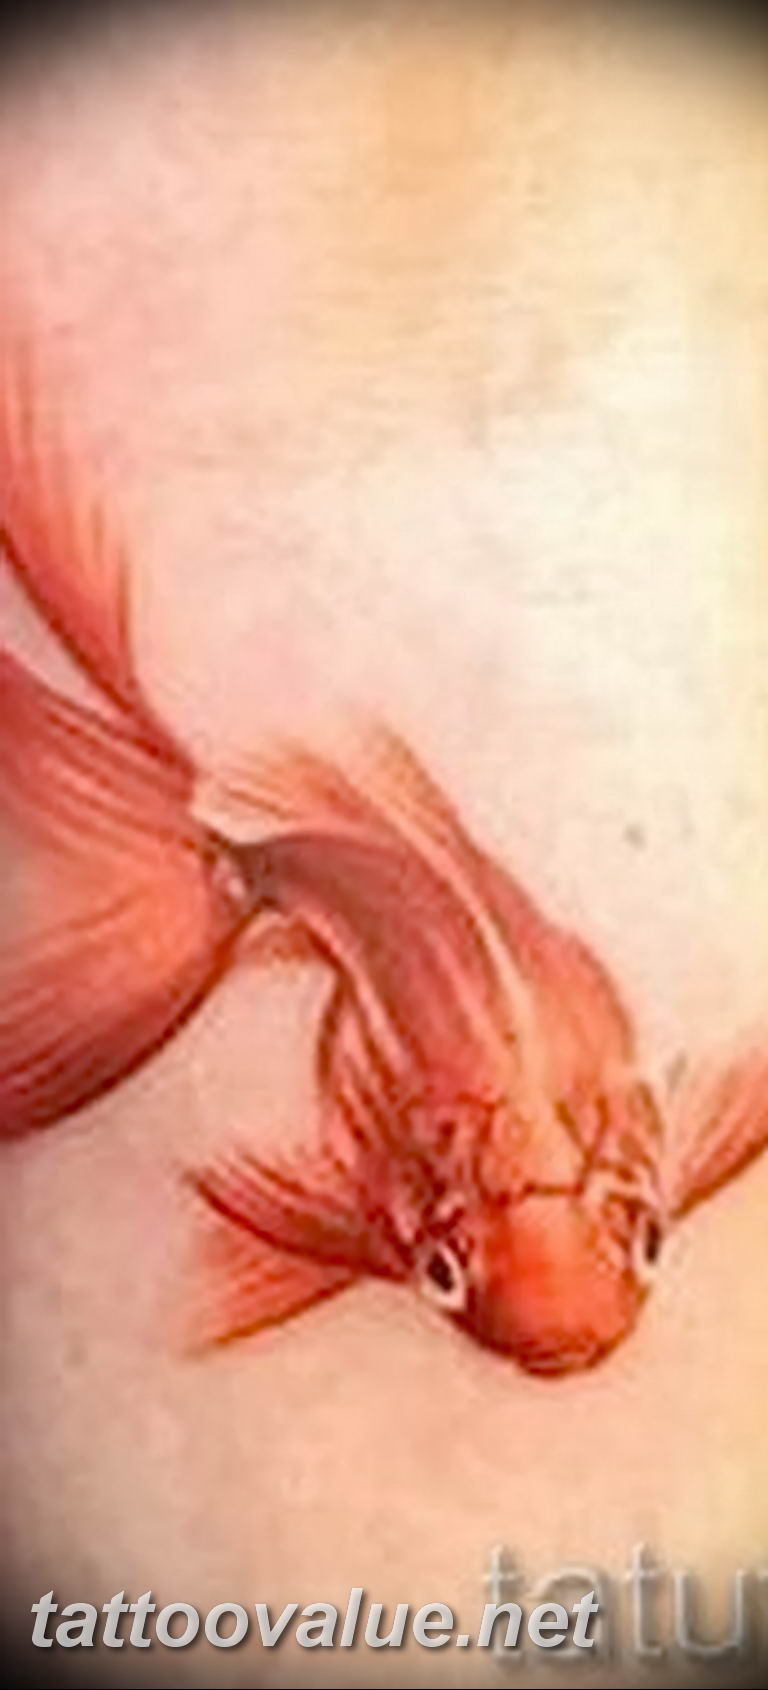 photo goldfish tattoo 04.01.2019 №067 - goldfish tattoo idea - tattoovalue.net